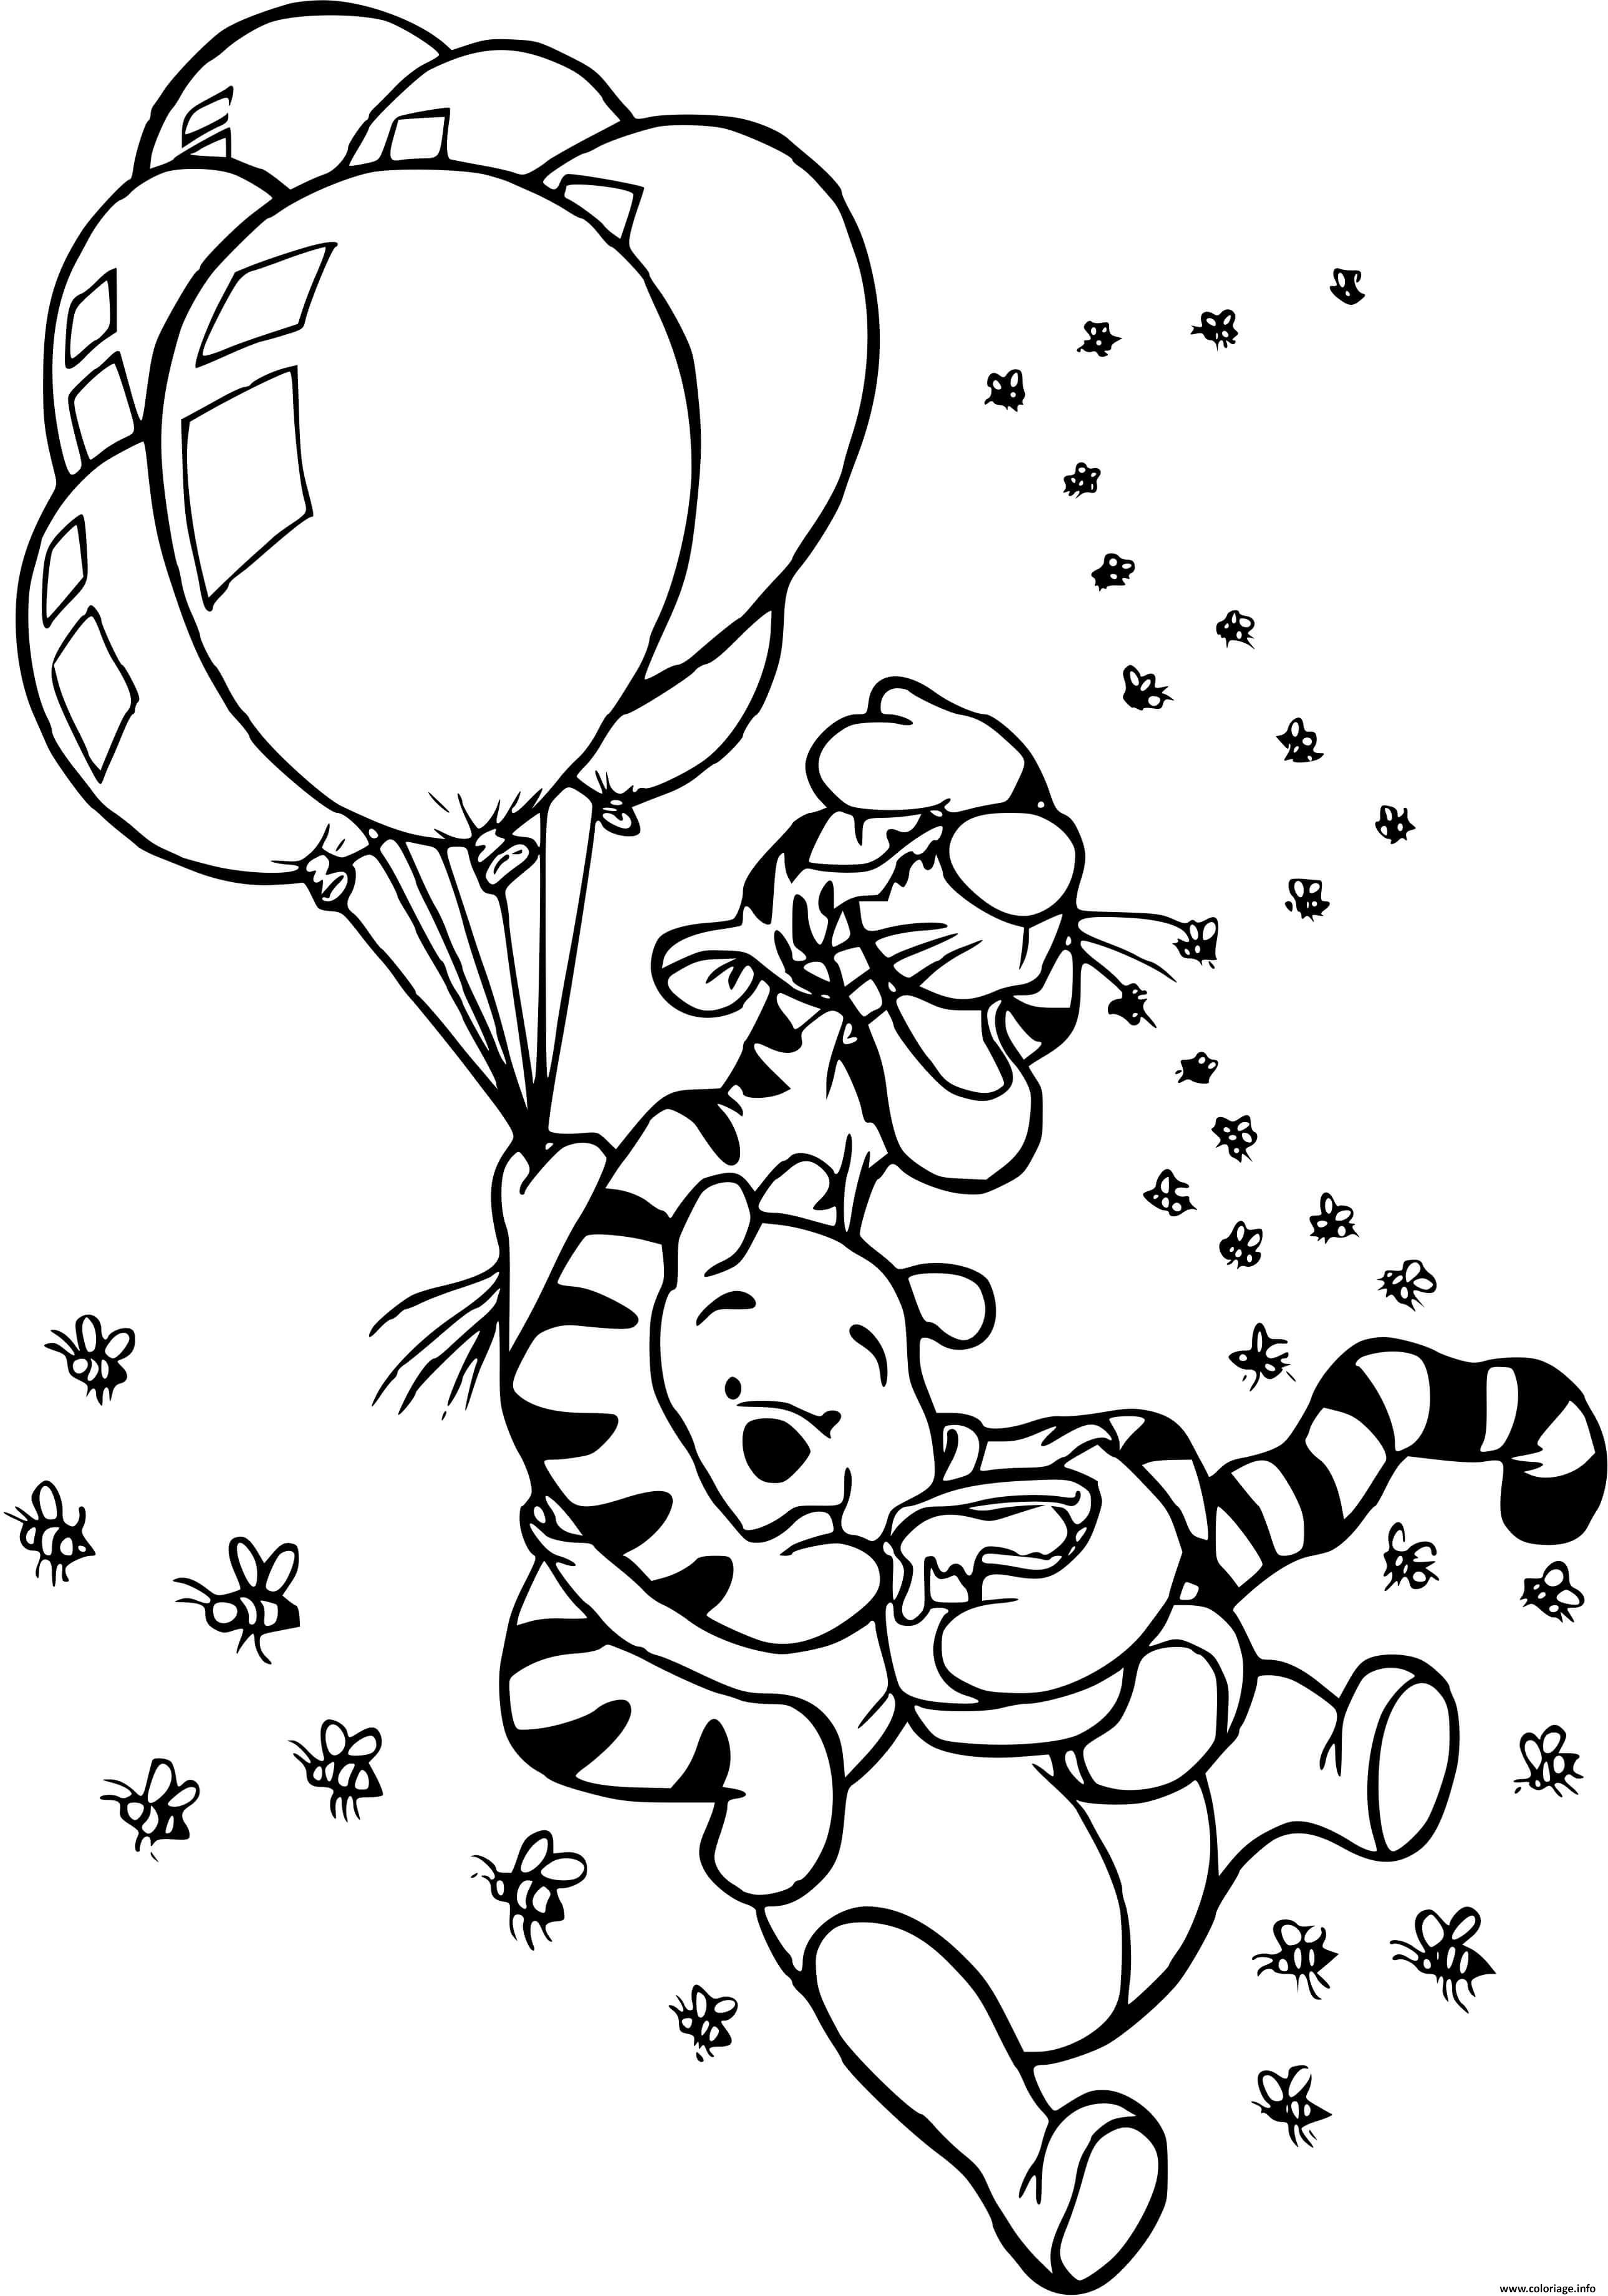 Coloriage Tigrou Et Winnie Dans Les Airs Avec Les Ballons Et Un Pot De Miel Dessin à Imprimer